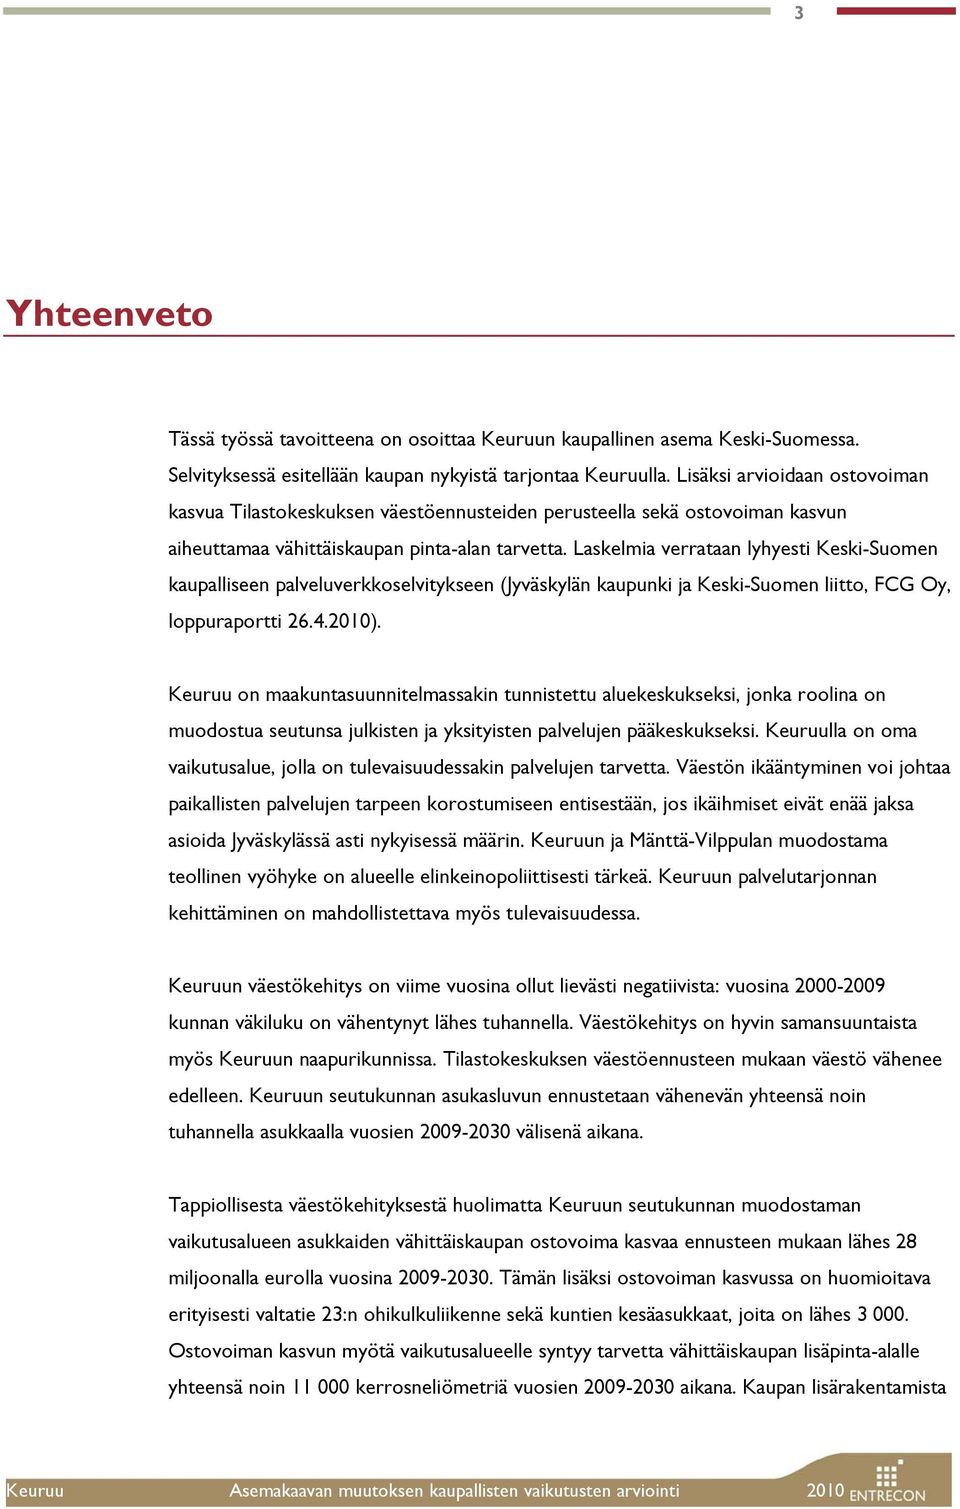 Laskelmia verrataan lyhyesti Keski-Suomen kaupalliseen palveluverkkoselvitykseen (Jyväskylän kaupunki ja Keski-Suomen liitto, FCG Oy, loppuraportti 26.4.2010).